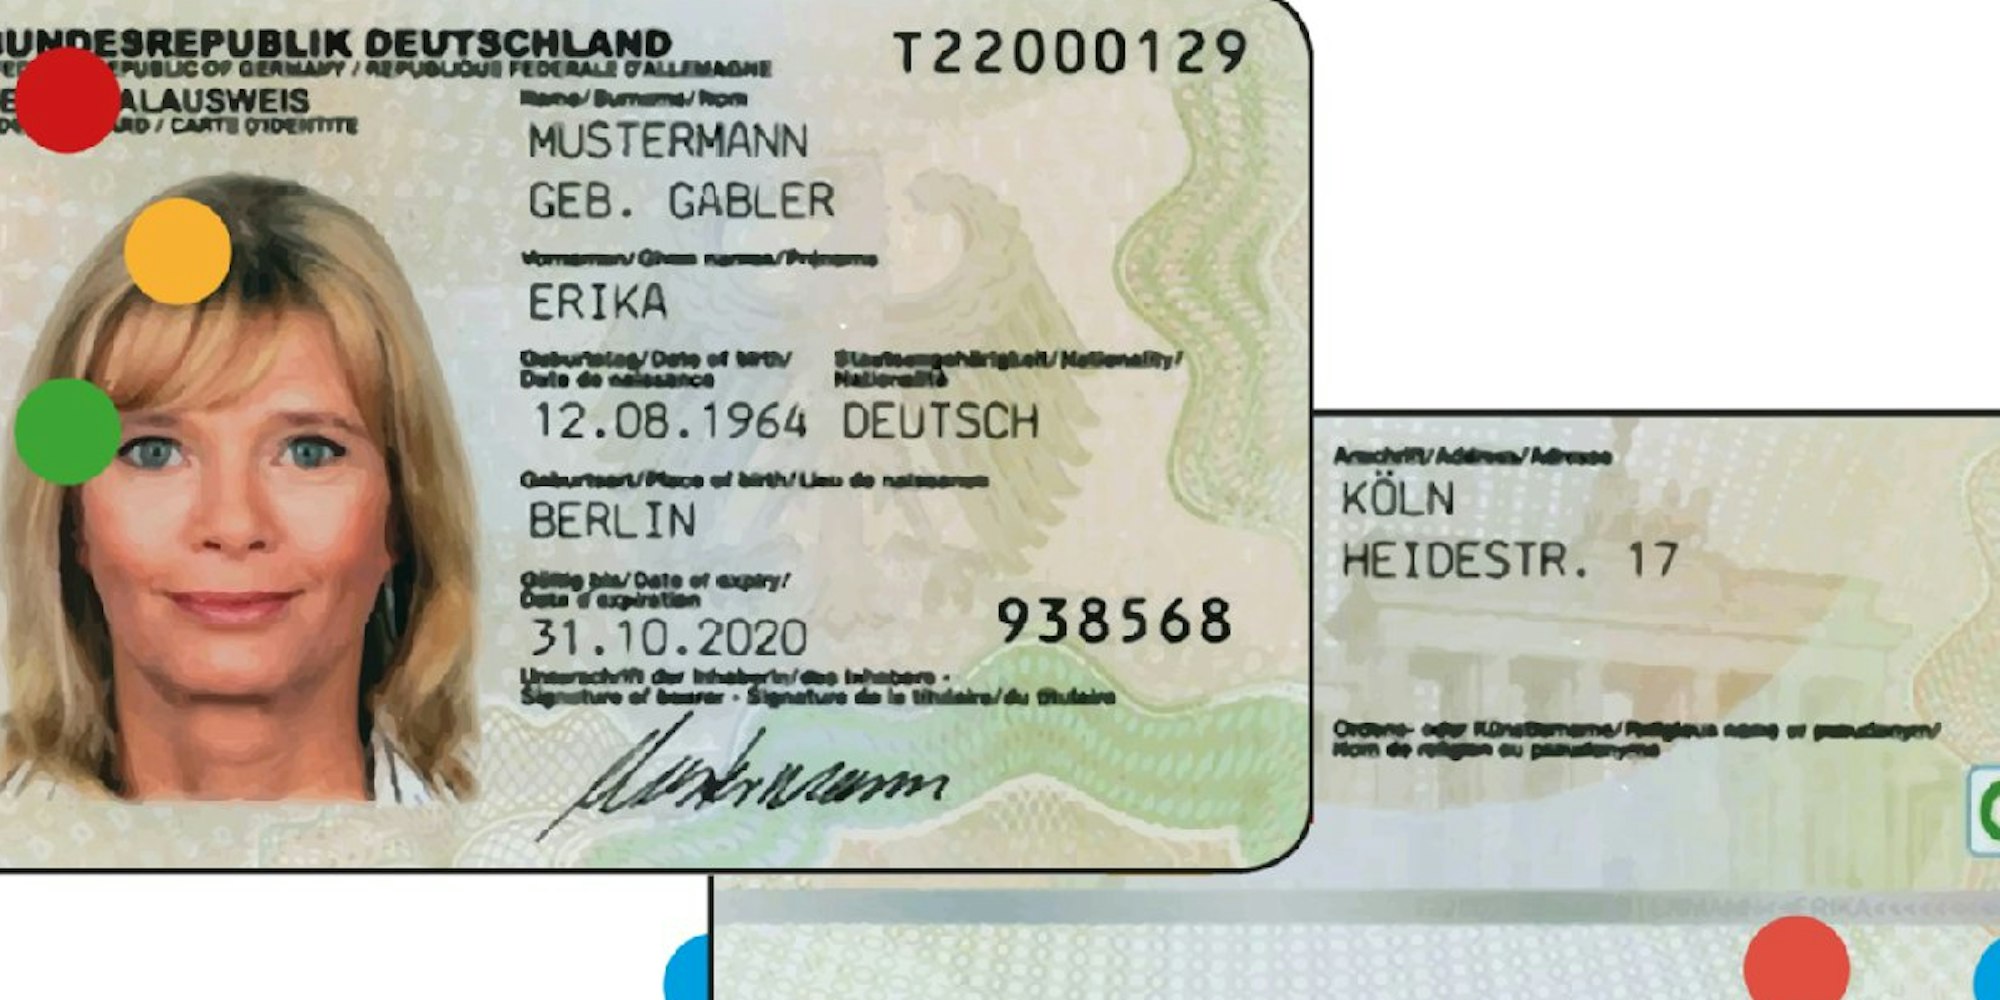 Das seit 2010 gültige Personalausweis-Muster ist mit dem Geburtsort Berlin und dem Wohnort Köln versehen.